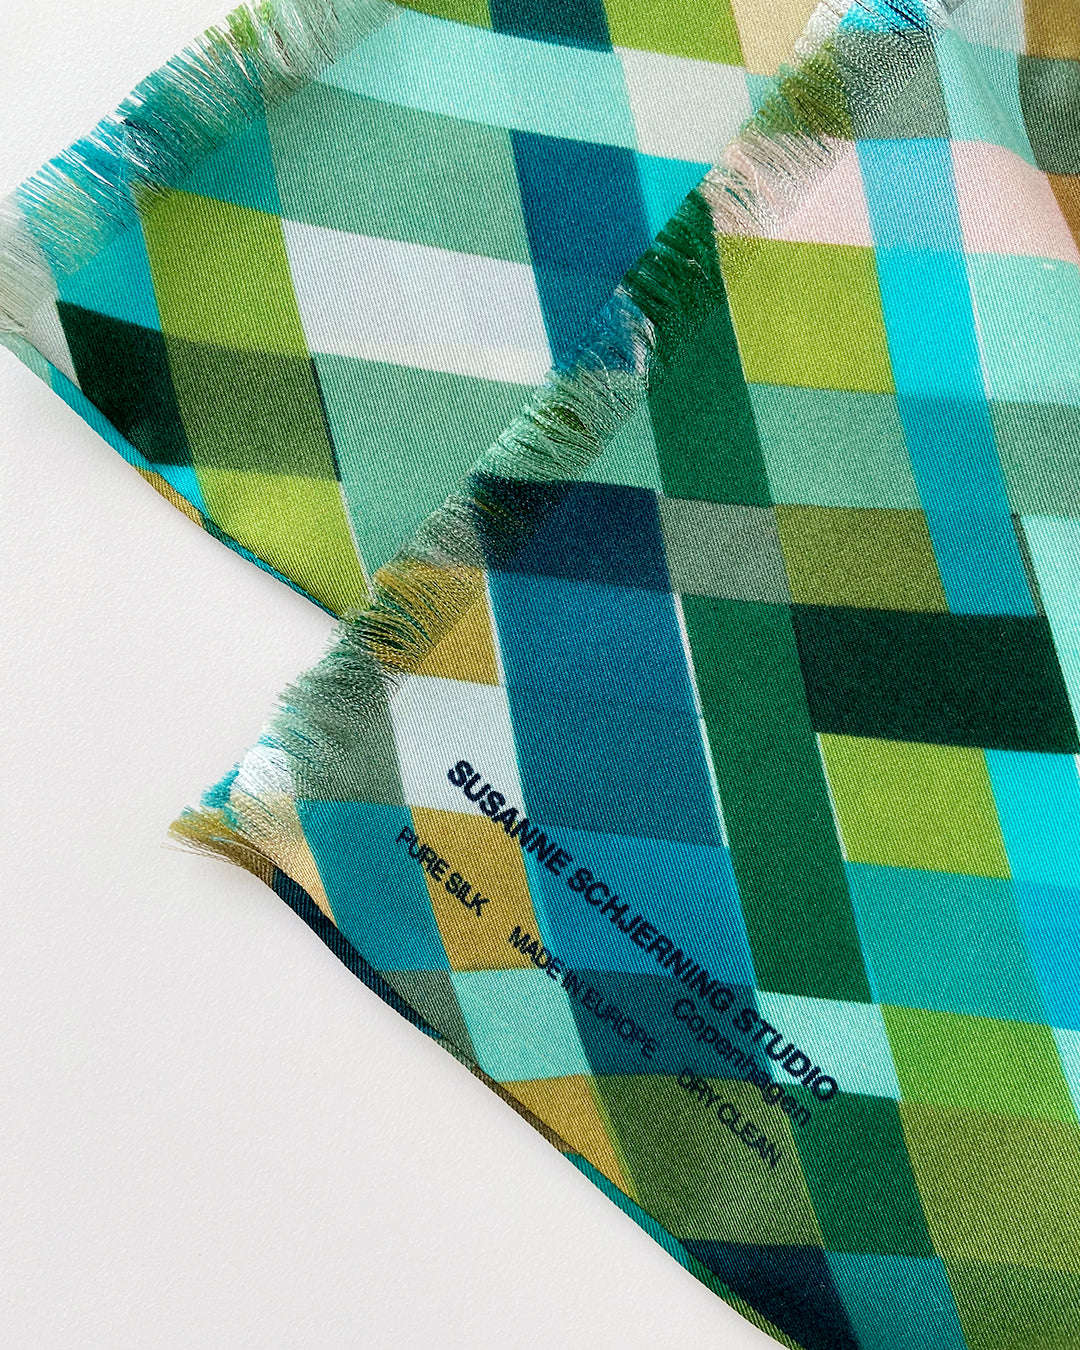 Aflangt silketørklæde med harlekintern, grønt silketørklæde, Silketørklæde i turkis farve, Silketørklæde i blå farve, silketørklæde i grøn farve, silketørklæde i multifarvede grønne harlekintern tern,  Silketørklæde aflangt 180 x 65 cm, Silketørklæde i 100 % ren silke, silketørklæde i ægte silke twill, silketørklæde med design af Susanne Schjerning, silketørklæde med rullede kanter. Giv et silketørklæde i gave. Bæredygtigt silketørklæde i dansk design.